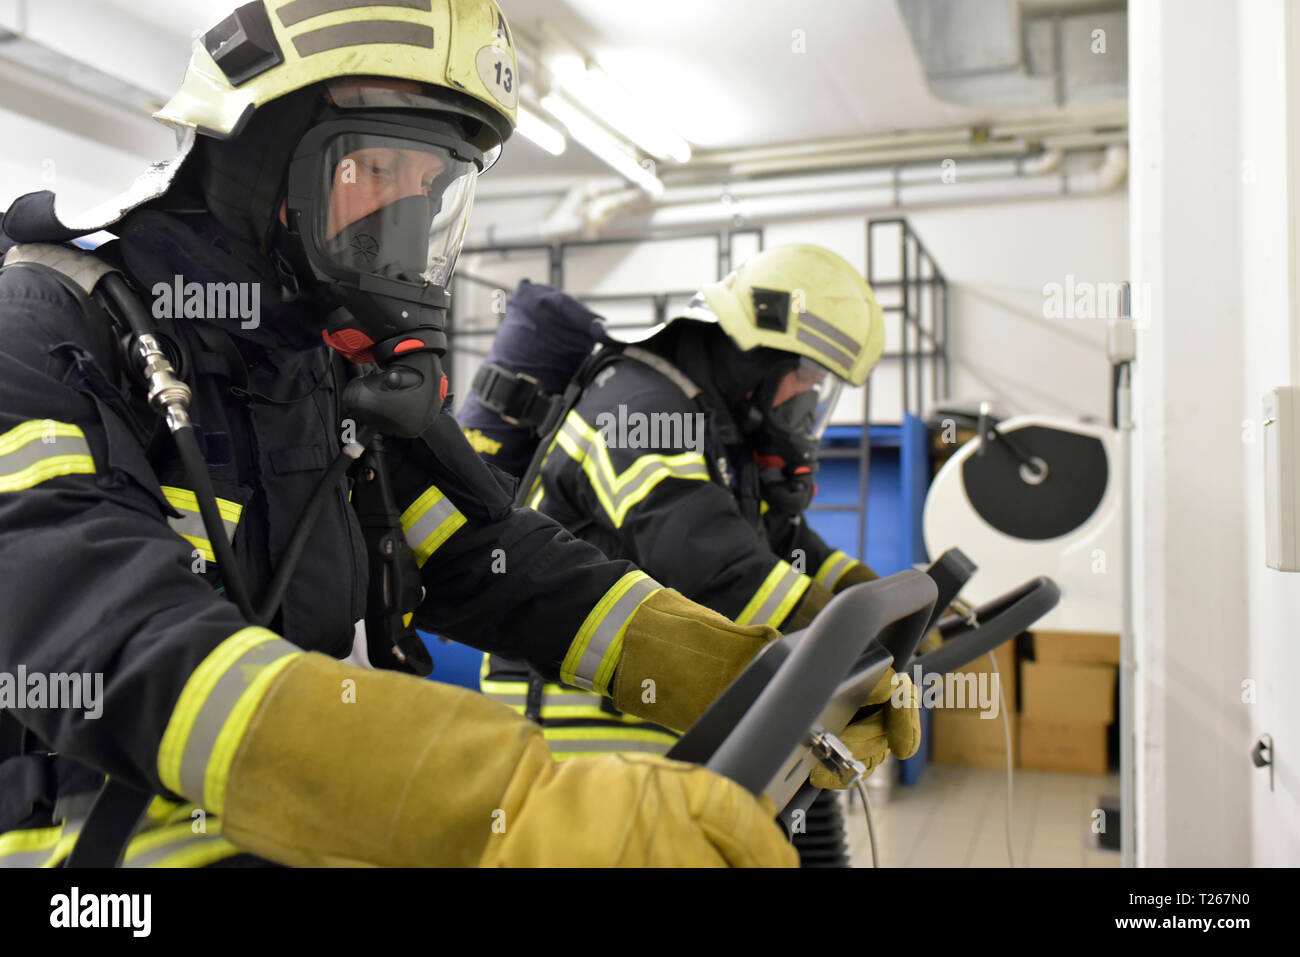 Deux pompiers respirateur avec réservoir d'air et l'exercice sur tapis roulant Banque D'Images